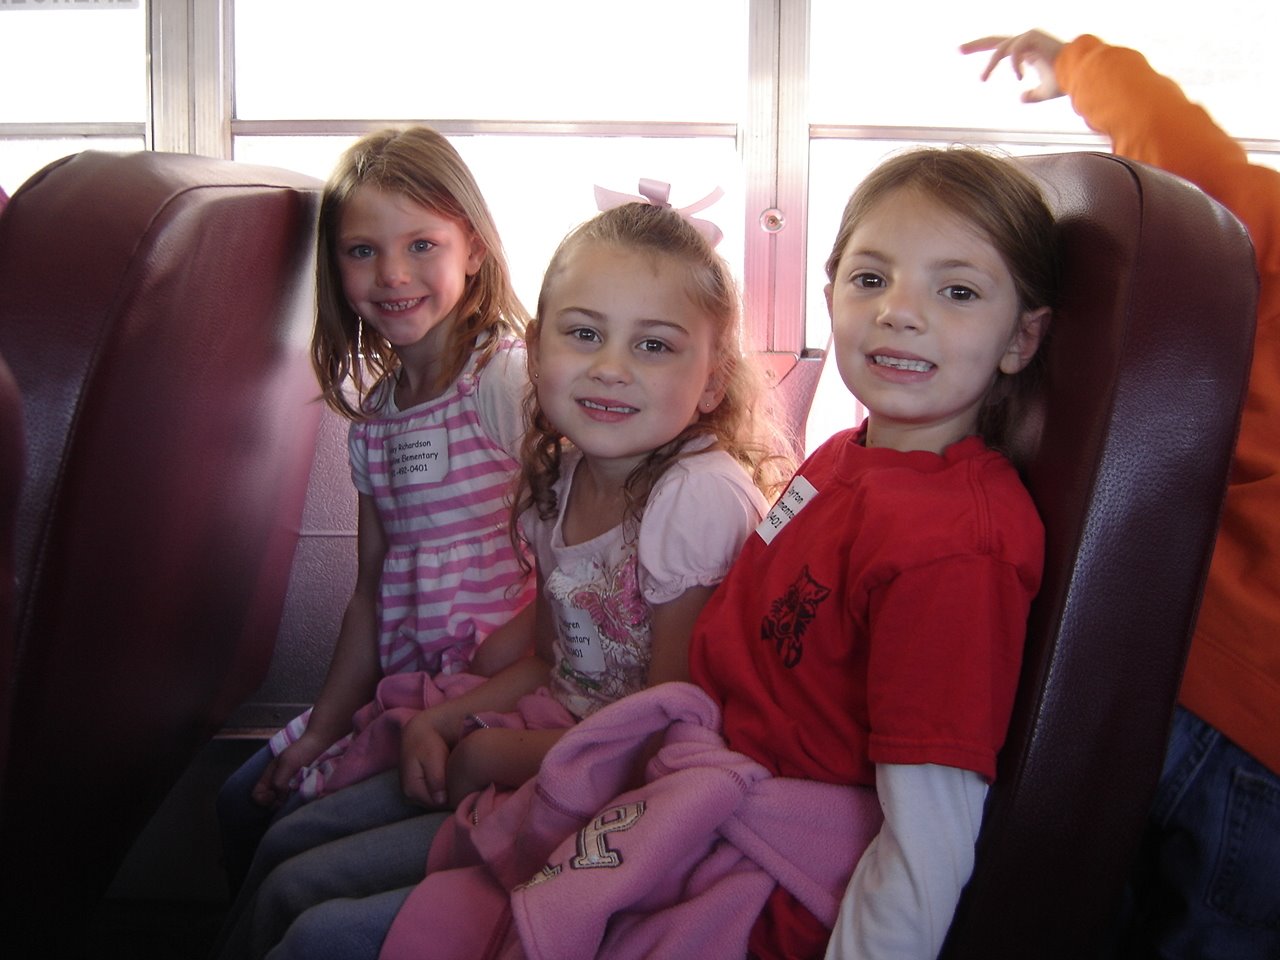 [Hailey+Gracie+Abby+bus.jpg]